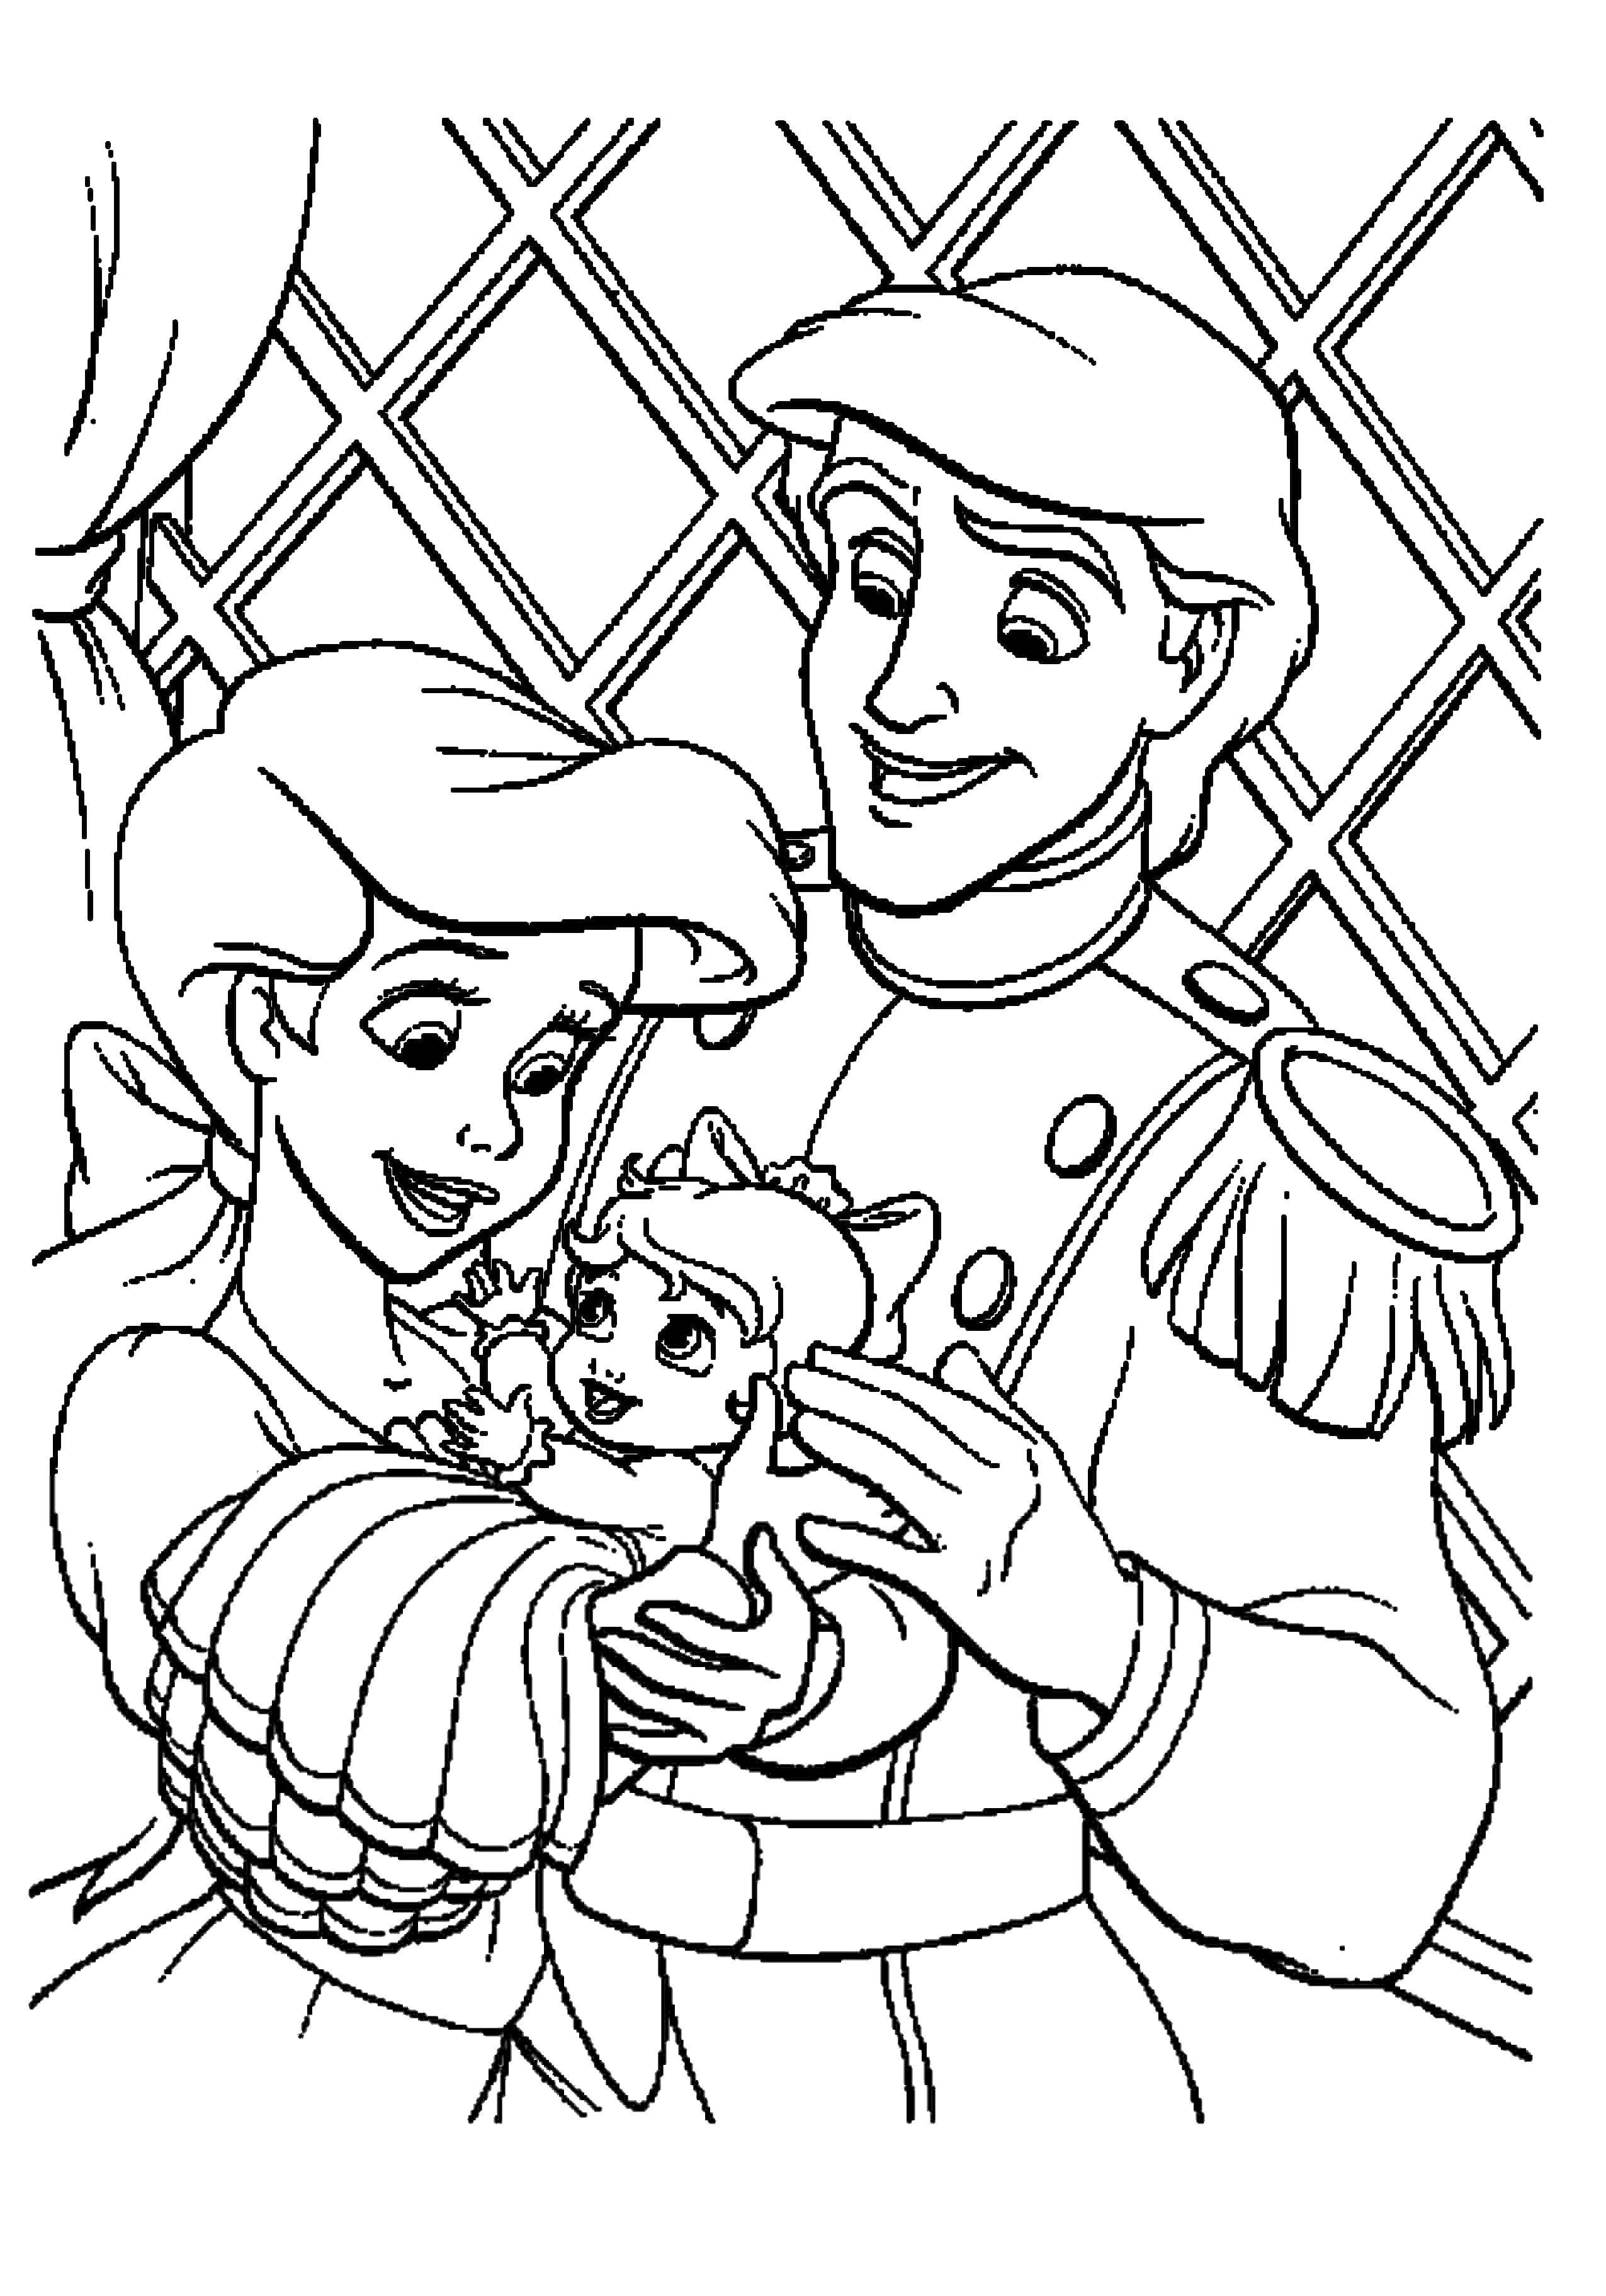 Опис: розмальовки  Принцеса аріель з принцем еріком і з донькою. Категорія: русалочка аріель. Теги:  Аріель, русалка.